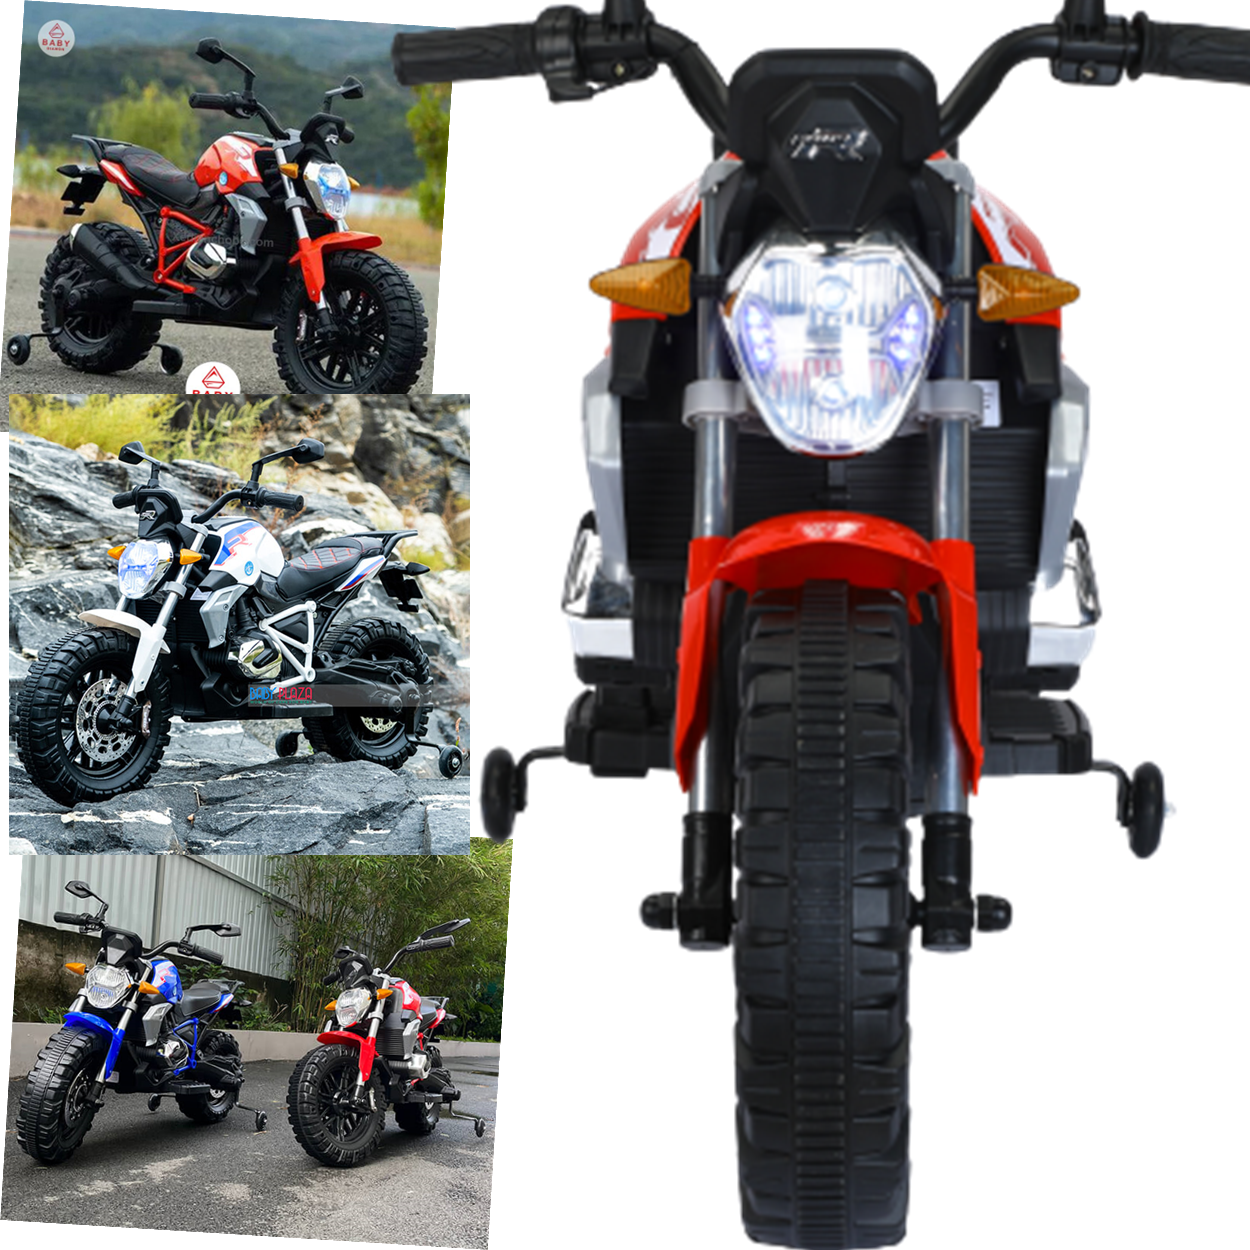 Moto Eletrica Infantil Shiny Toys Ducati Monster 6V Vermelha - Shiny Toys -  Brinquedos é na Bmtoys